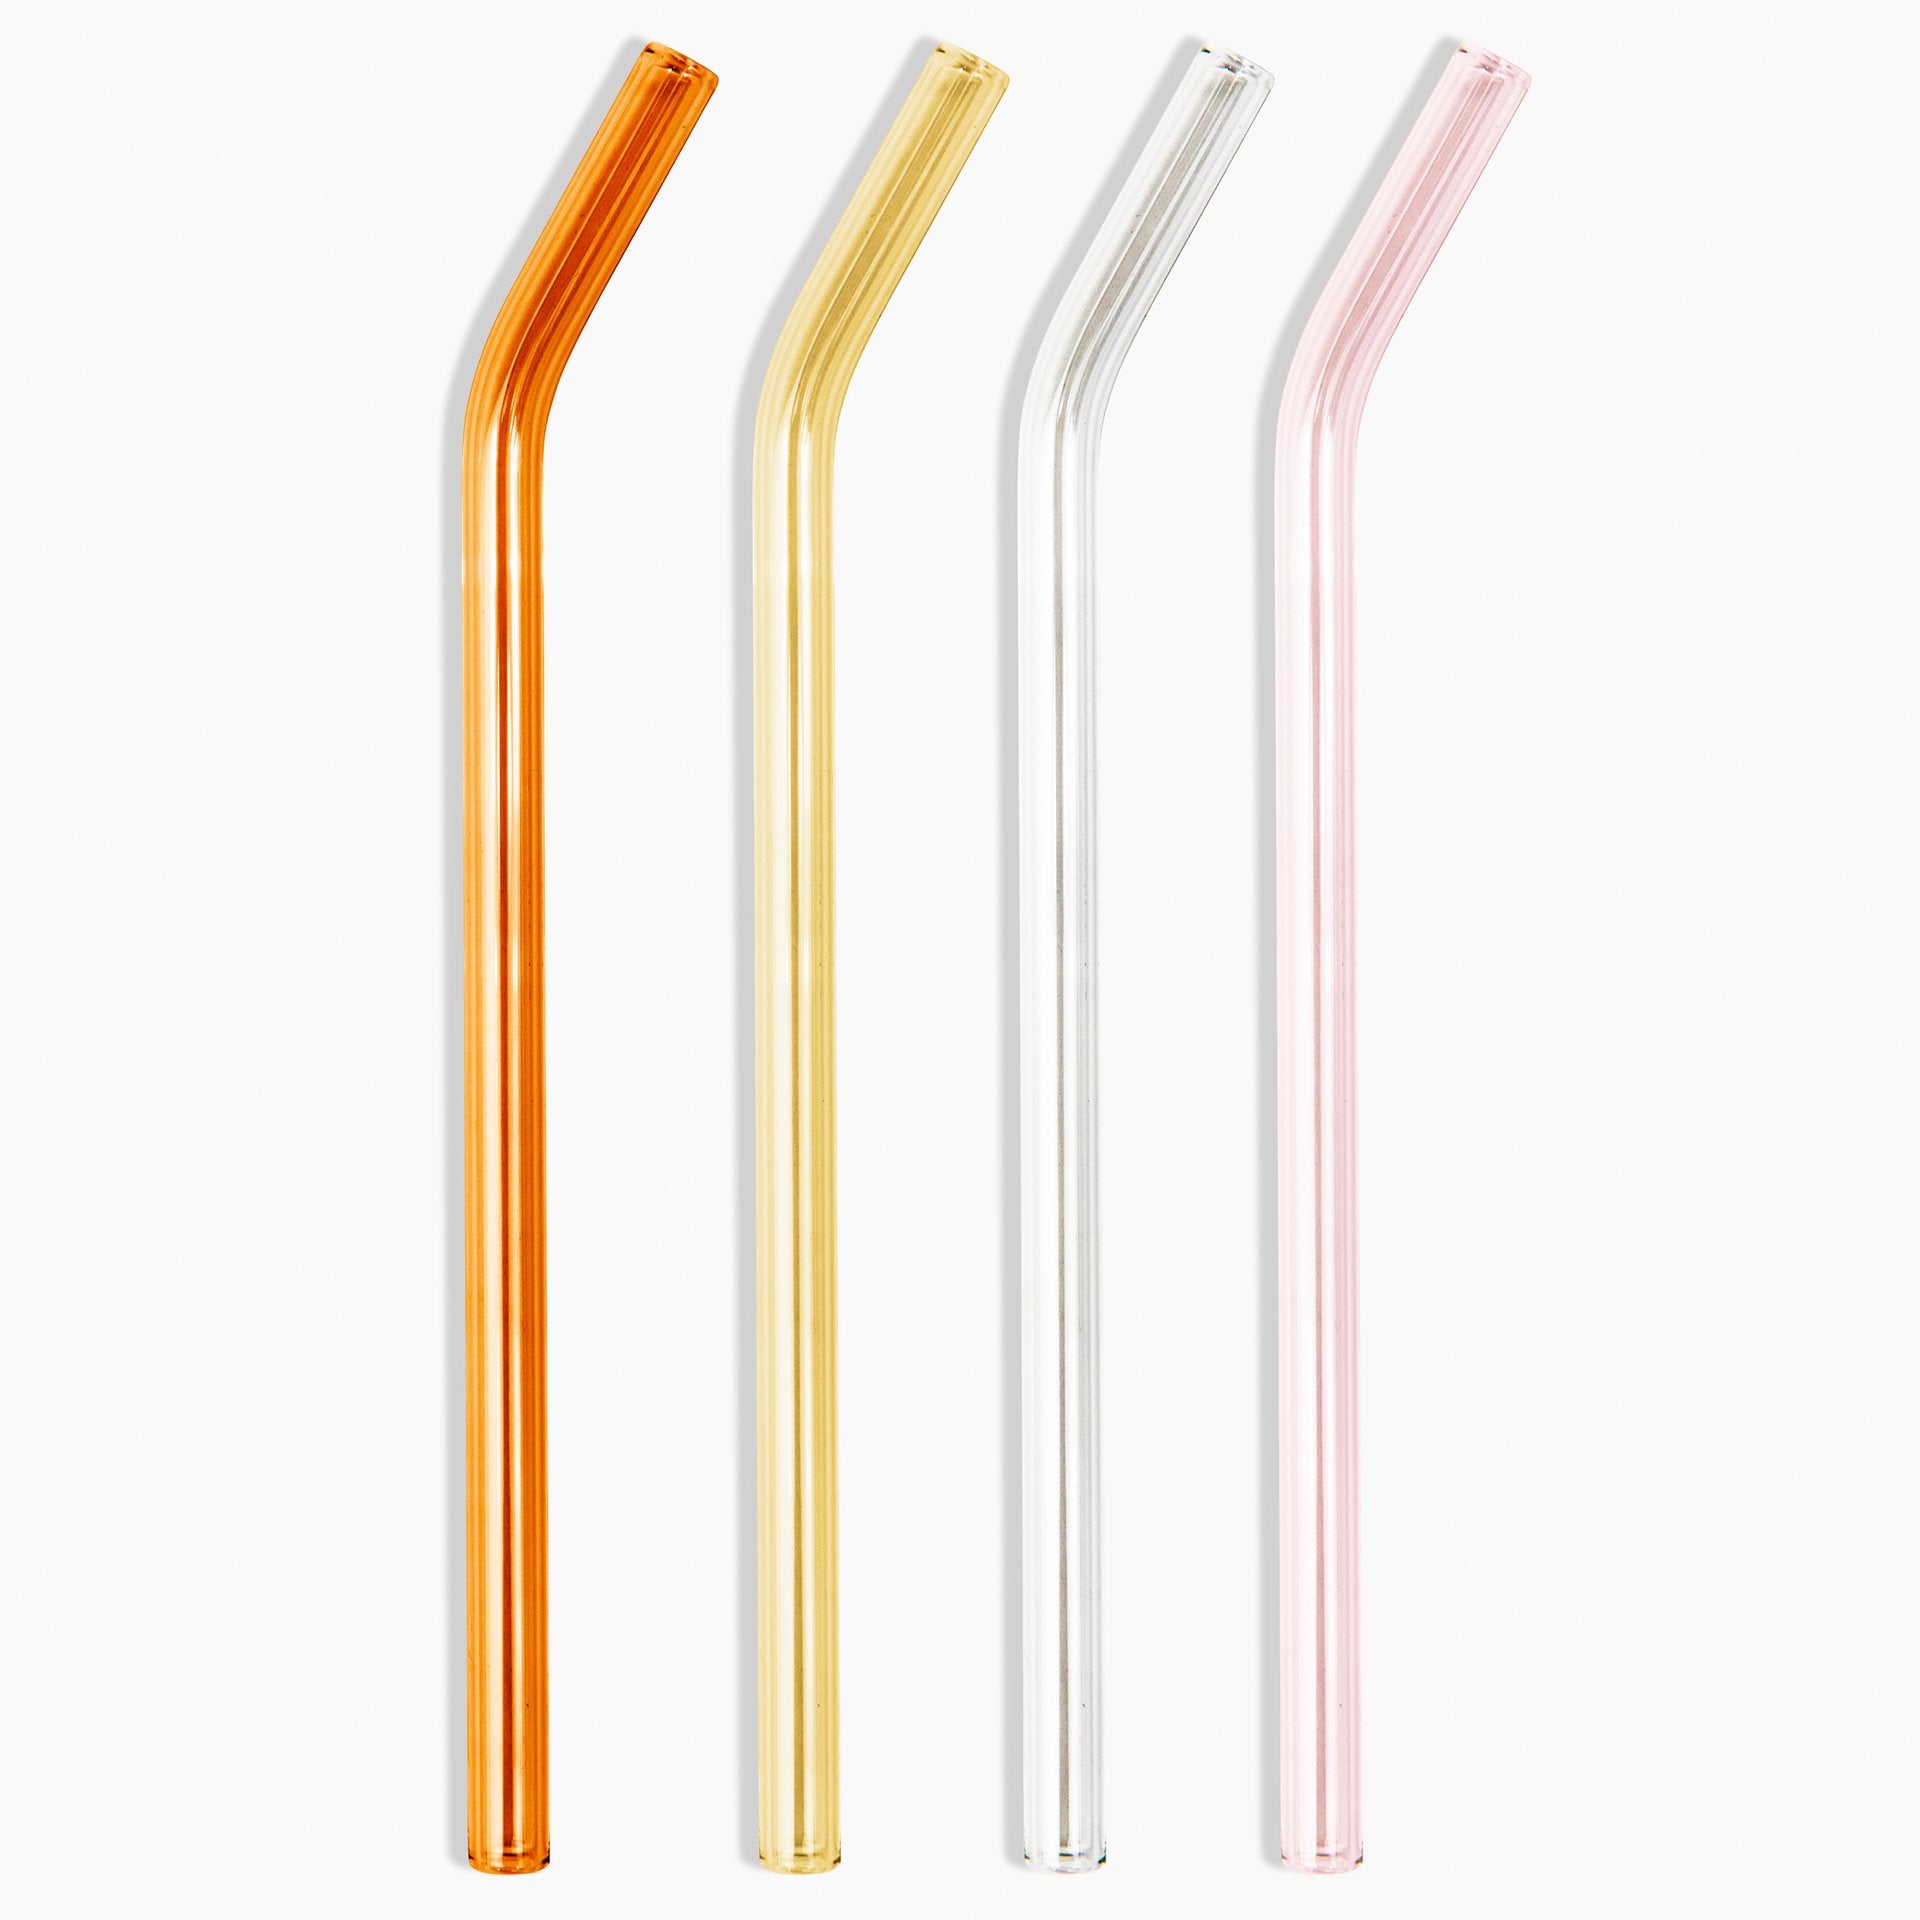 Poketo Glass Straws in Warm Set